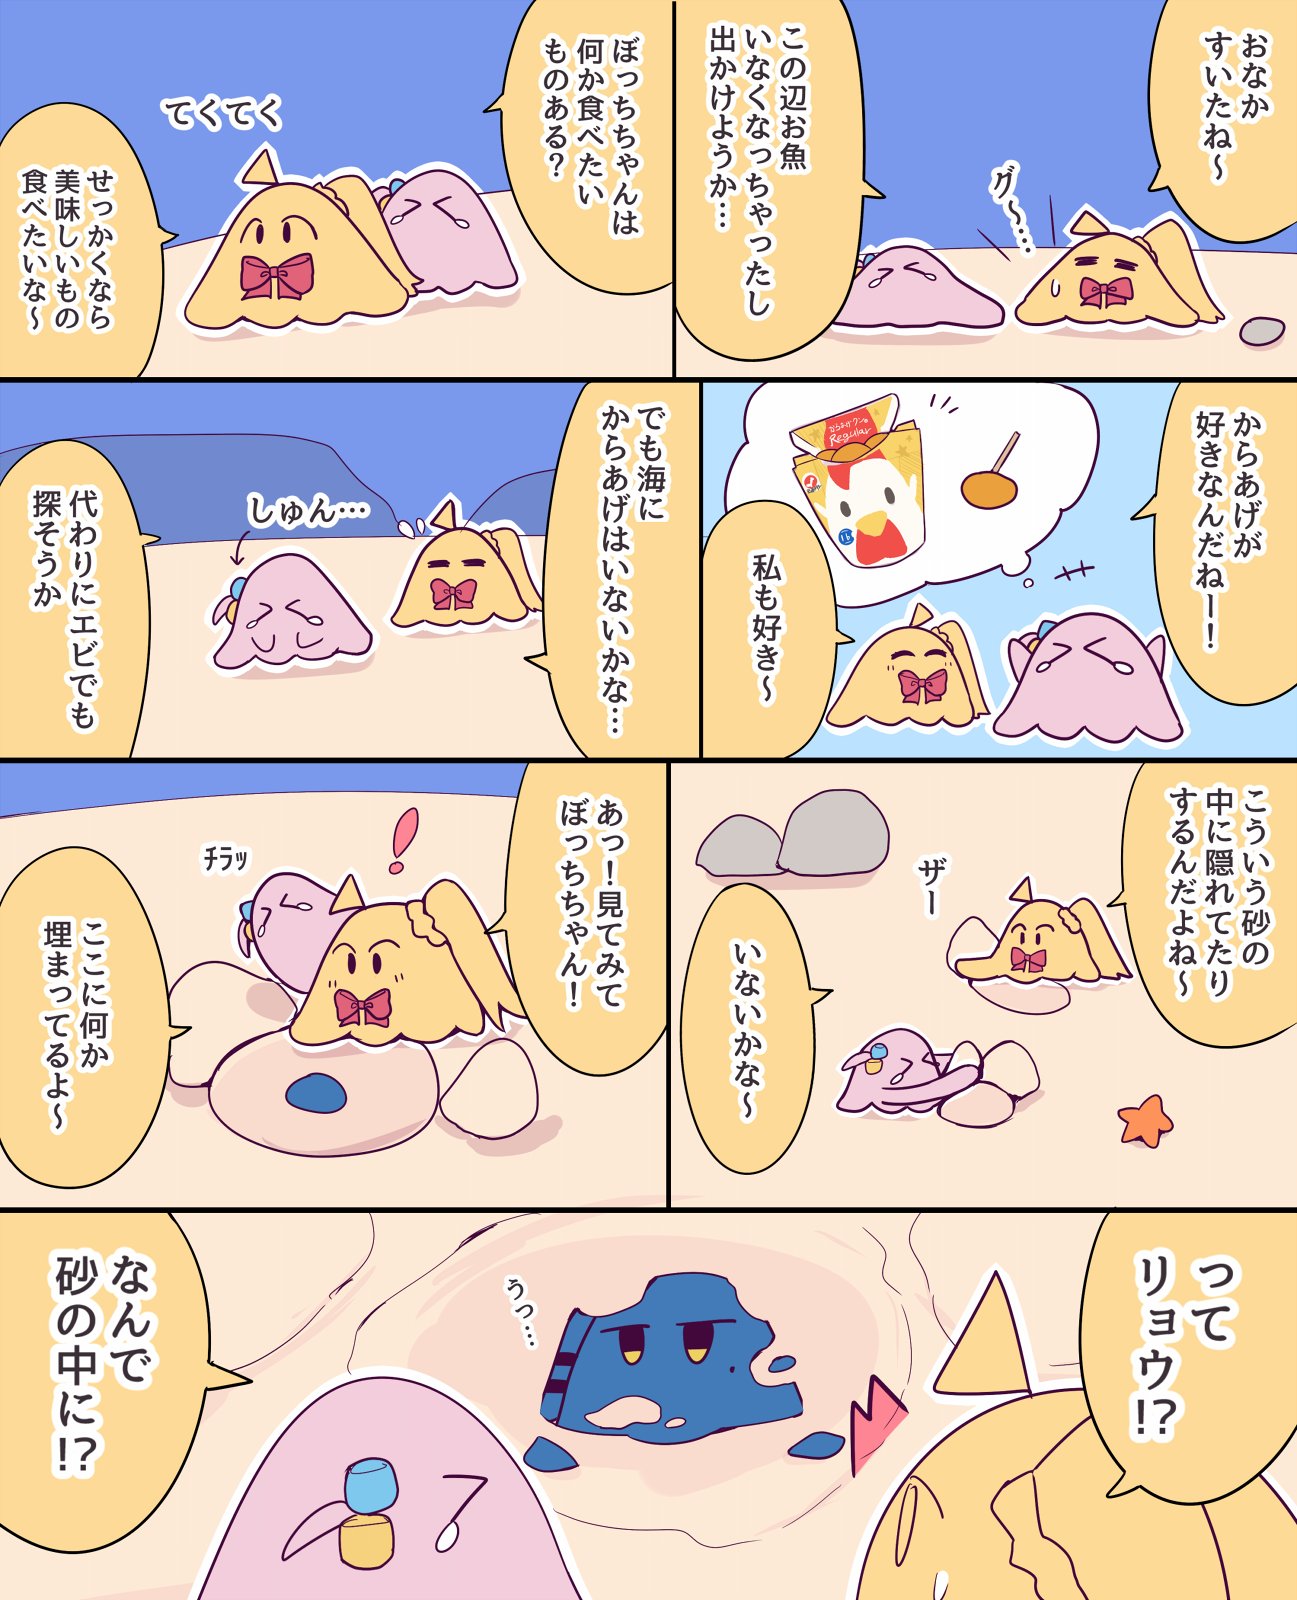 Re: [孤獨] 小孤獨扁面蛸漫畫 -- 海裡的波虹3